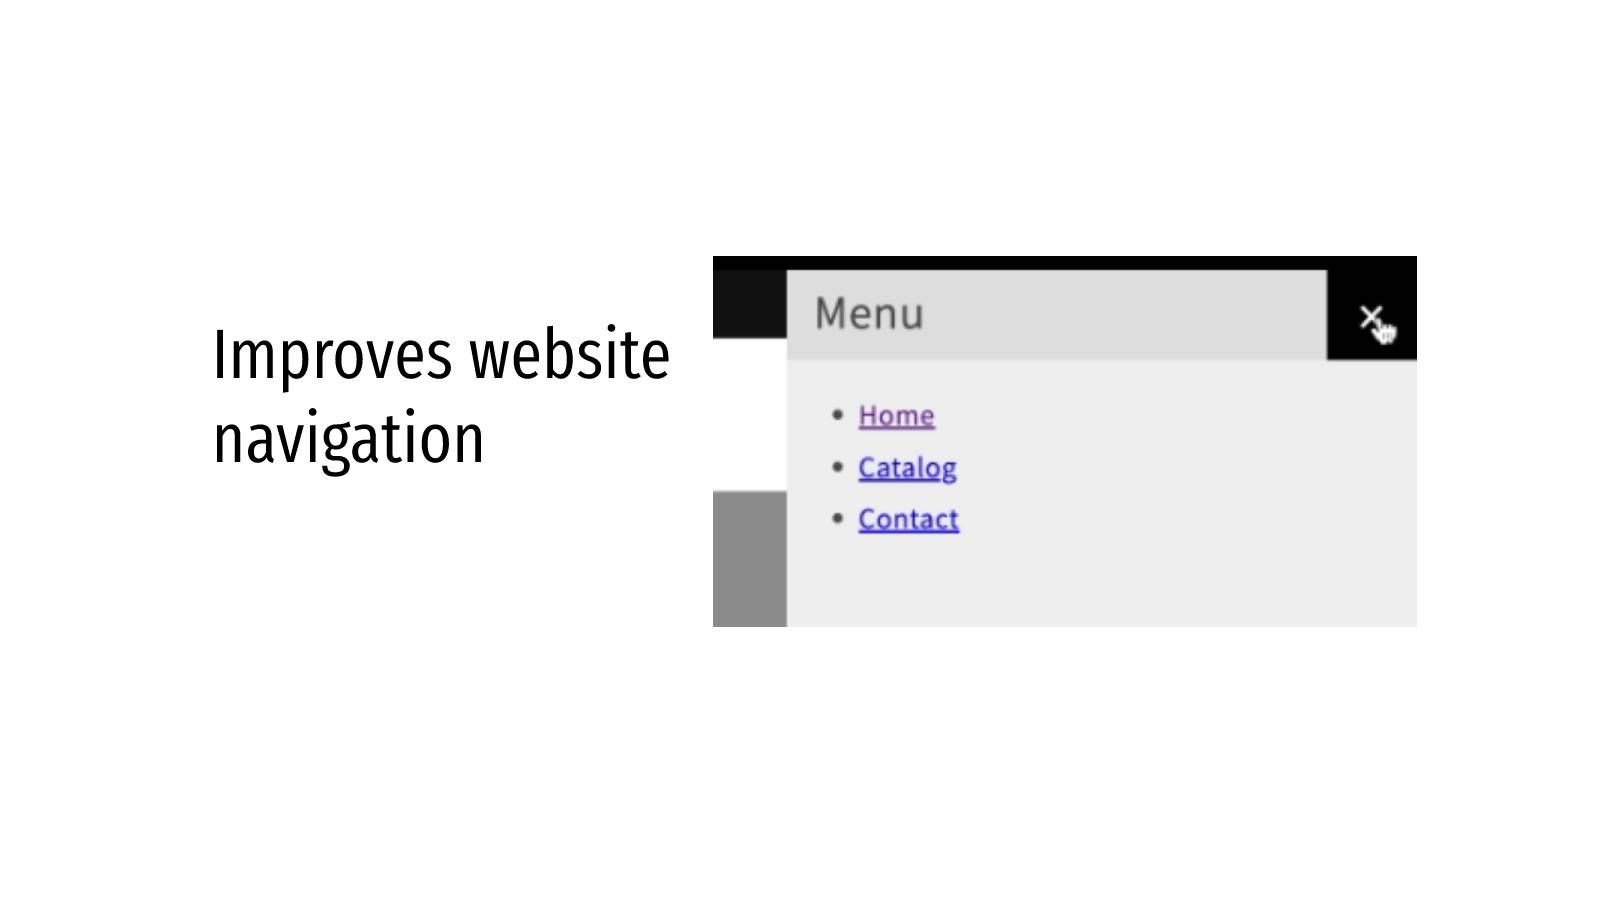 Improves website navigation